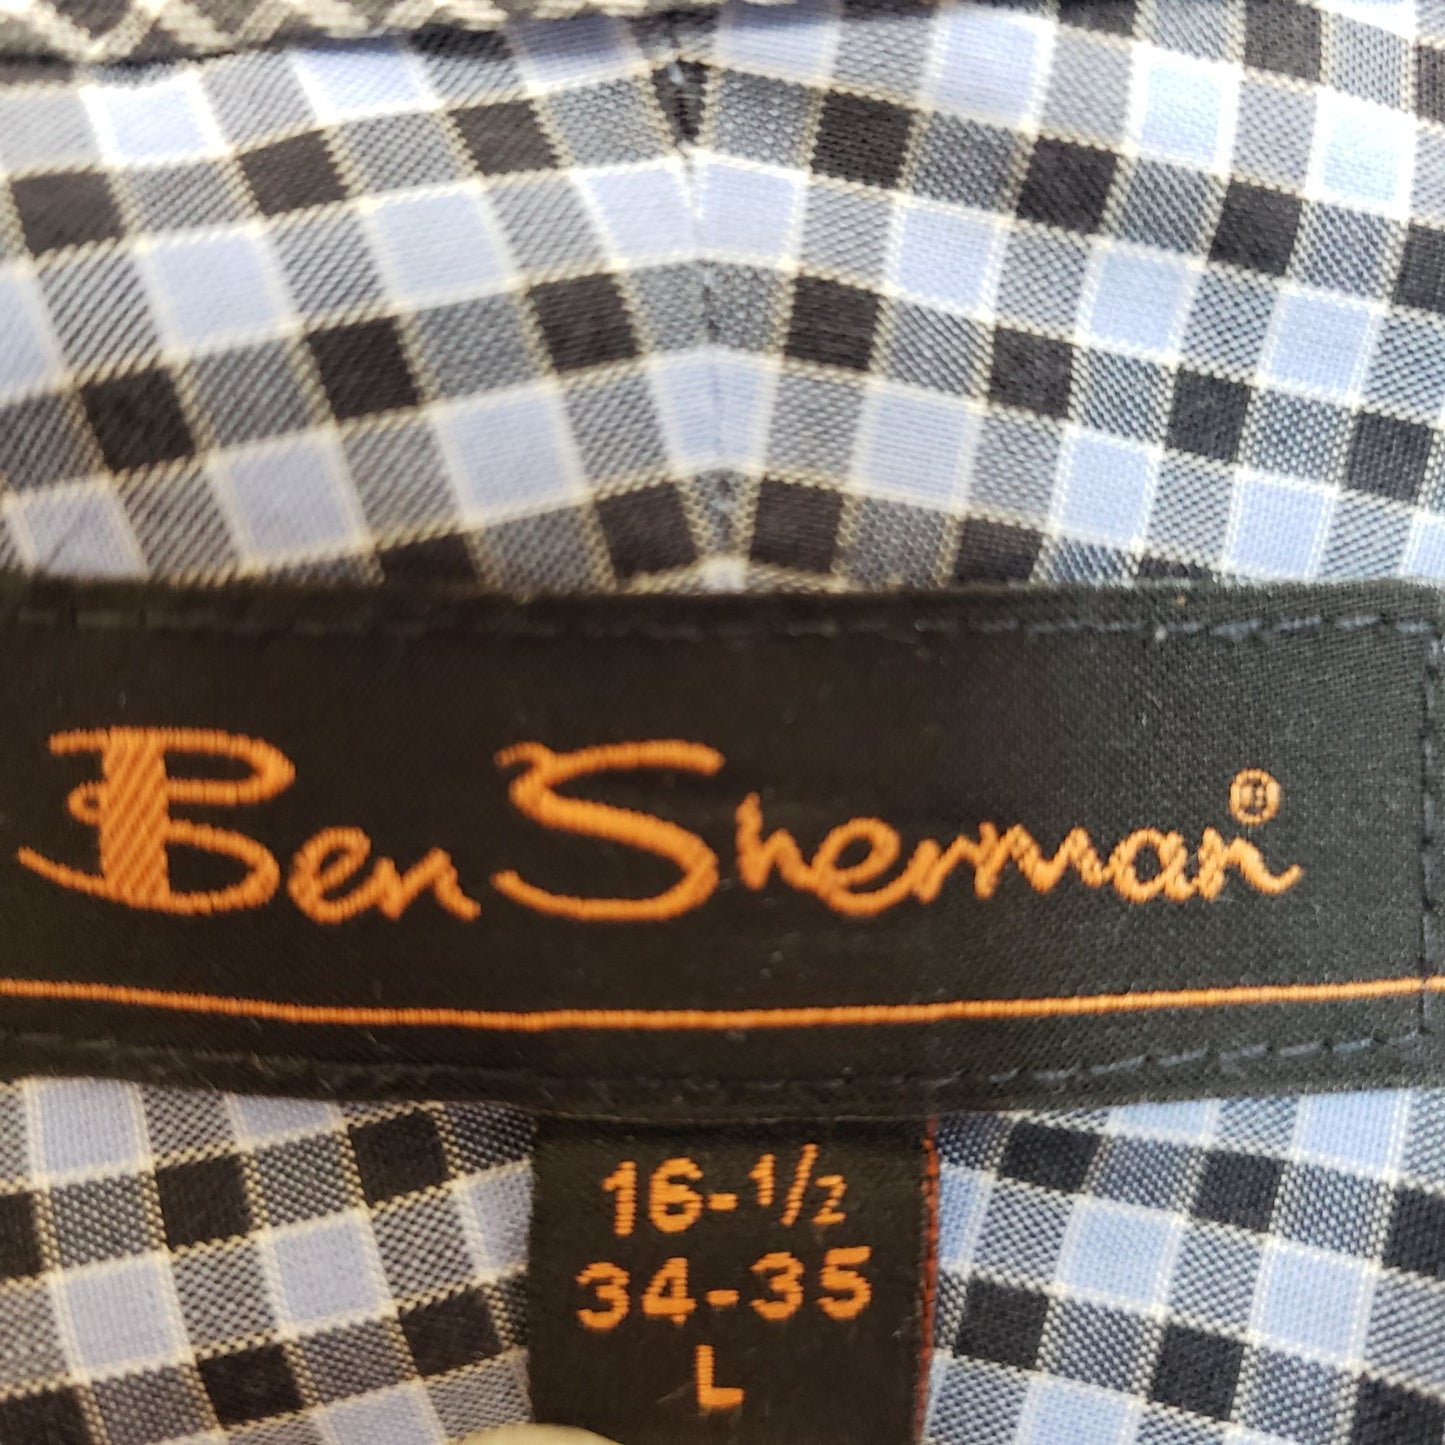 Ben Sherman Checked Button Down Shirt Size Large